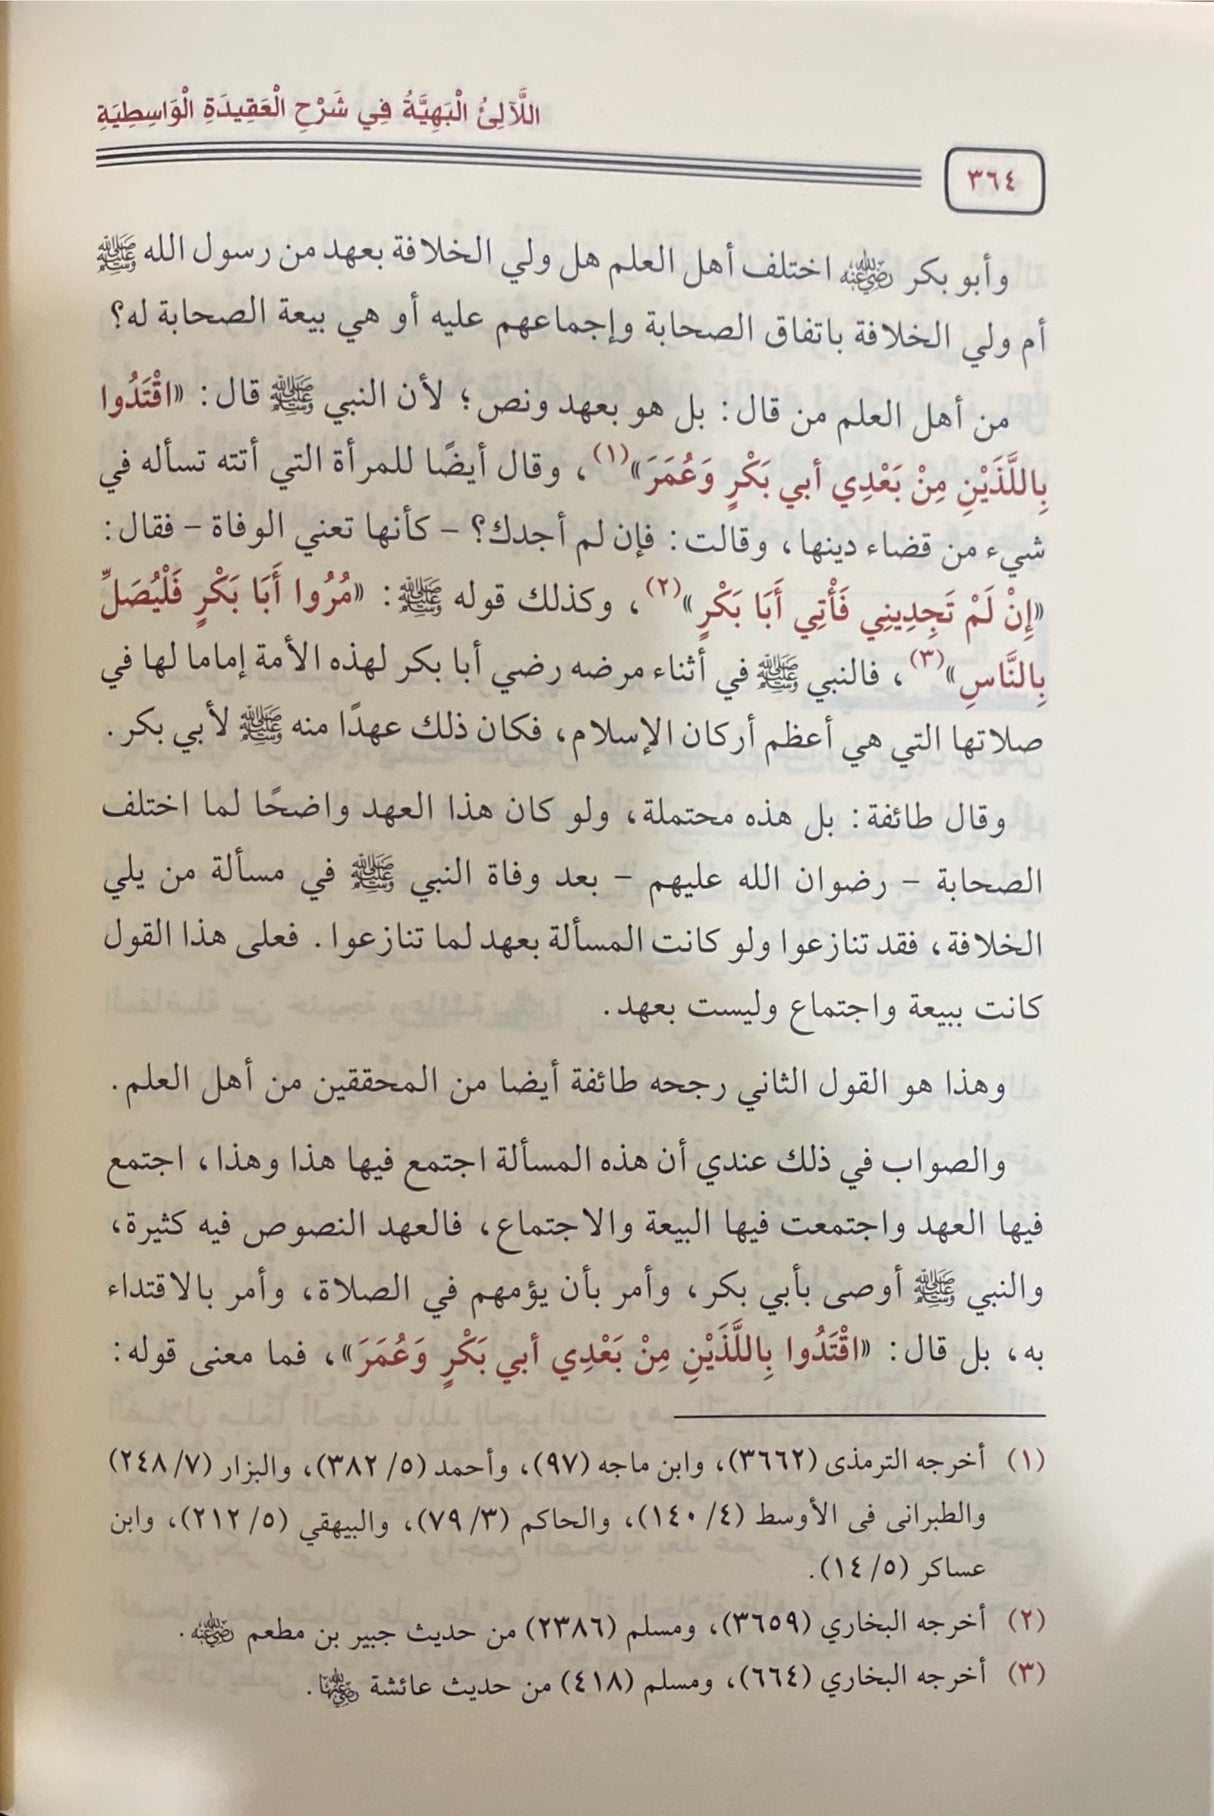 الالئ البهية في شرح العقيدة الواسطية     Al Lalil Bahiyah (2 Volume Set)